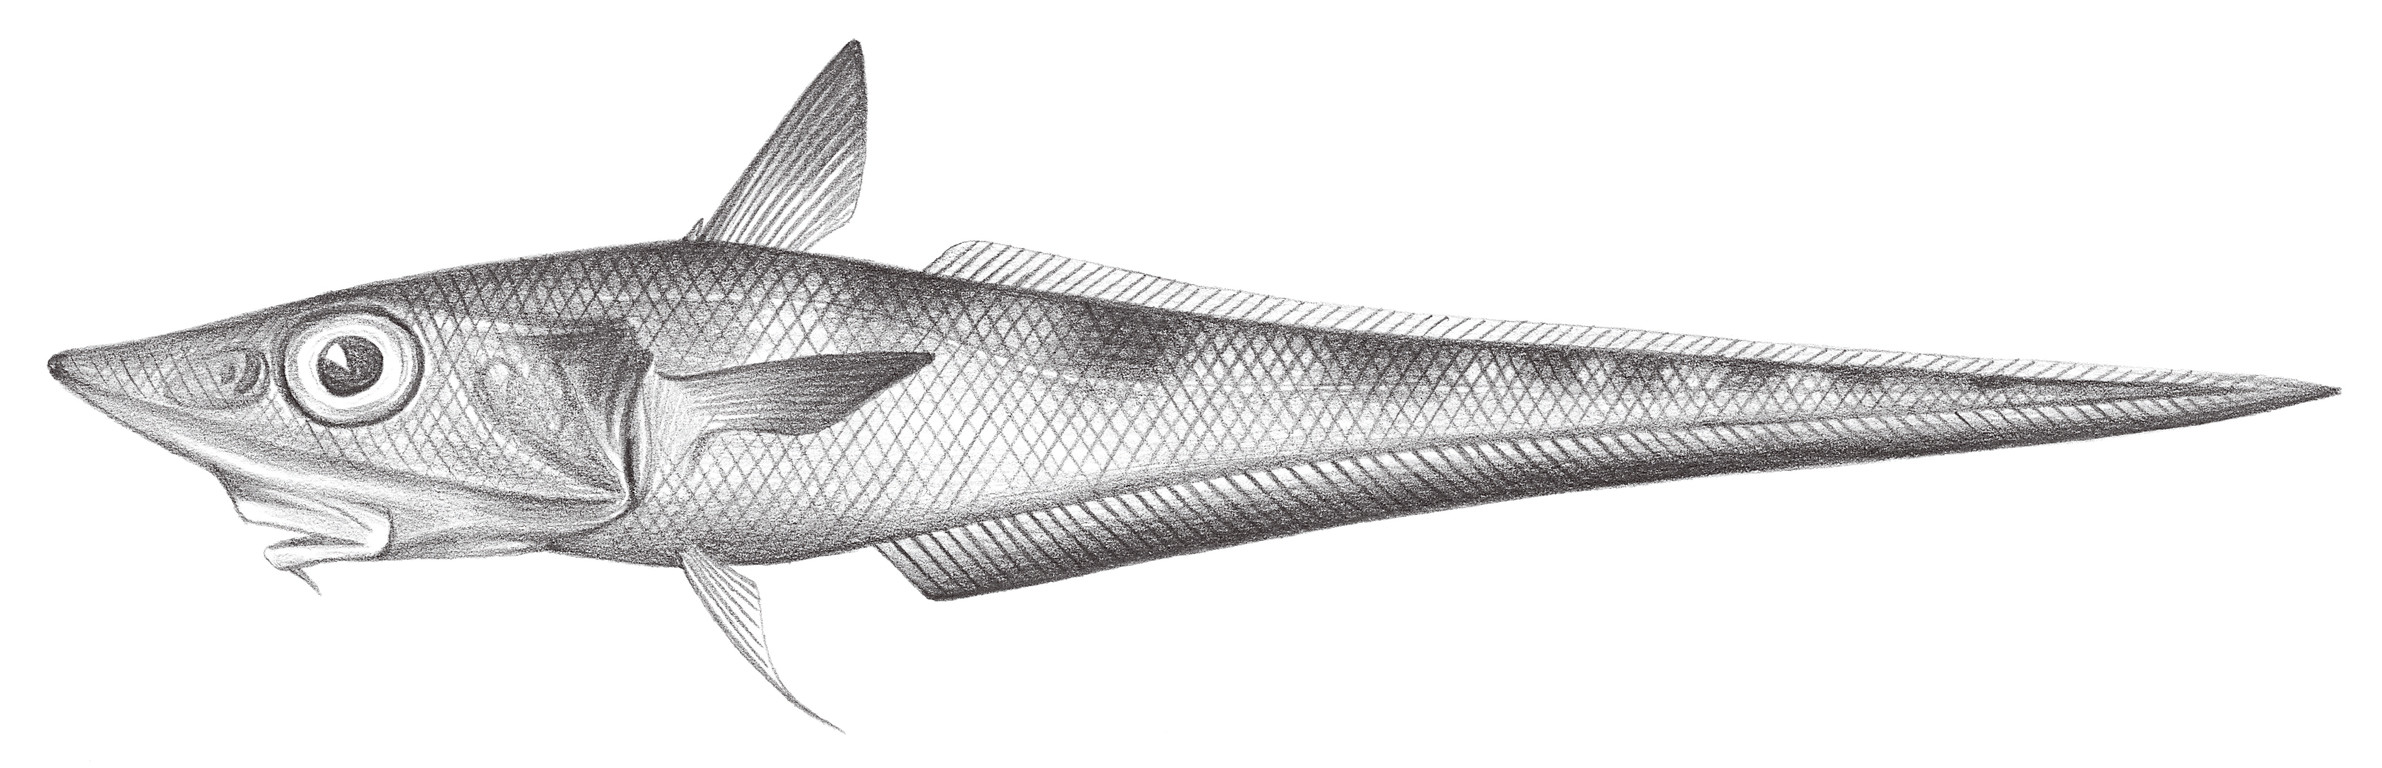 570.	東京腔吻鱈 Caelorinchus tokiensis (Steindachner & Döderlein, 1887)